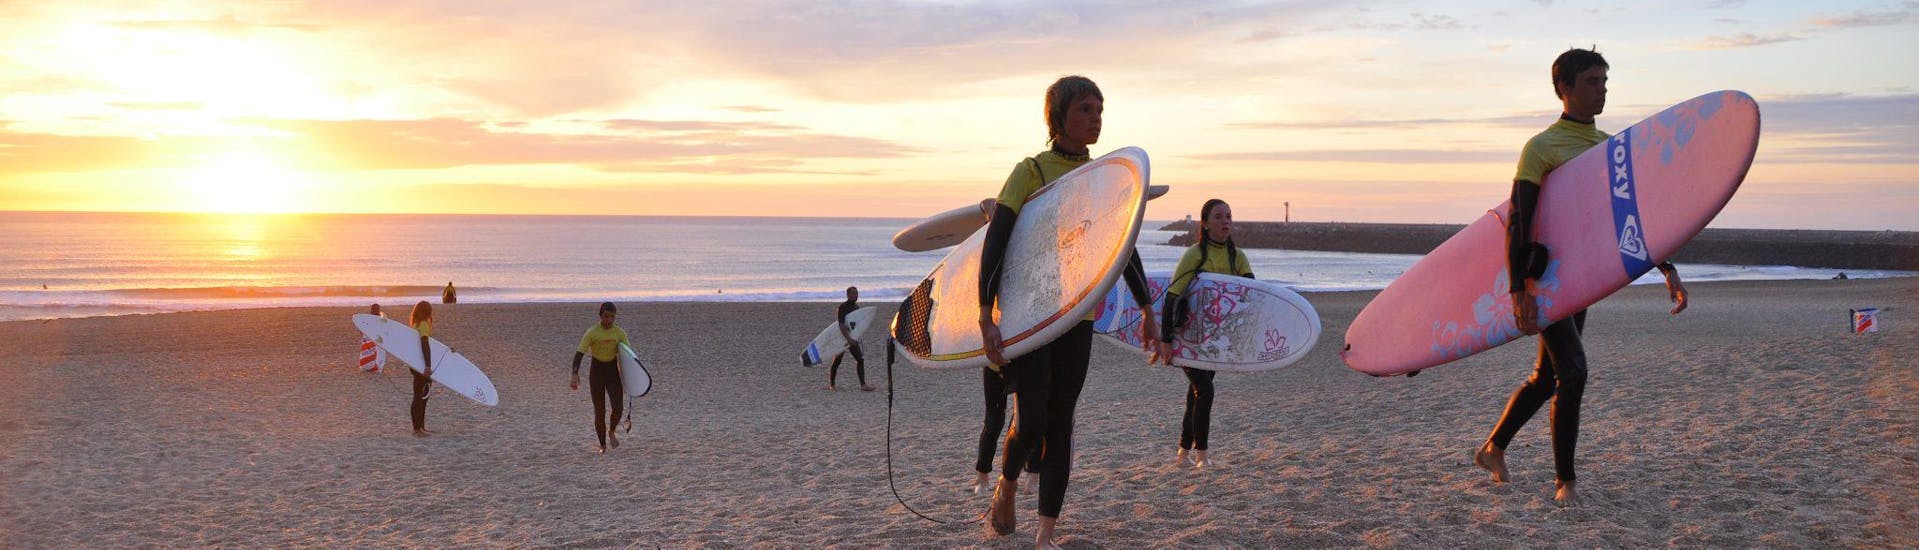 Lezioni private di surf a Anglet da 7 anni per tutti i livelli.